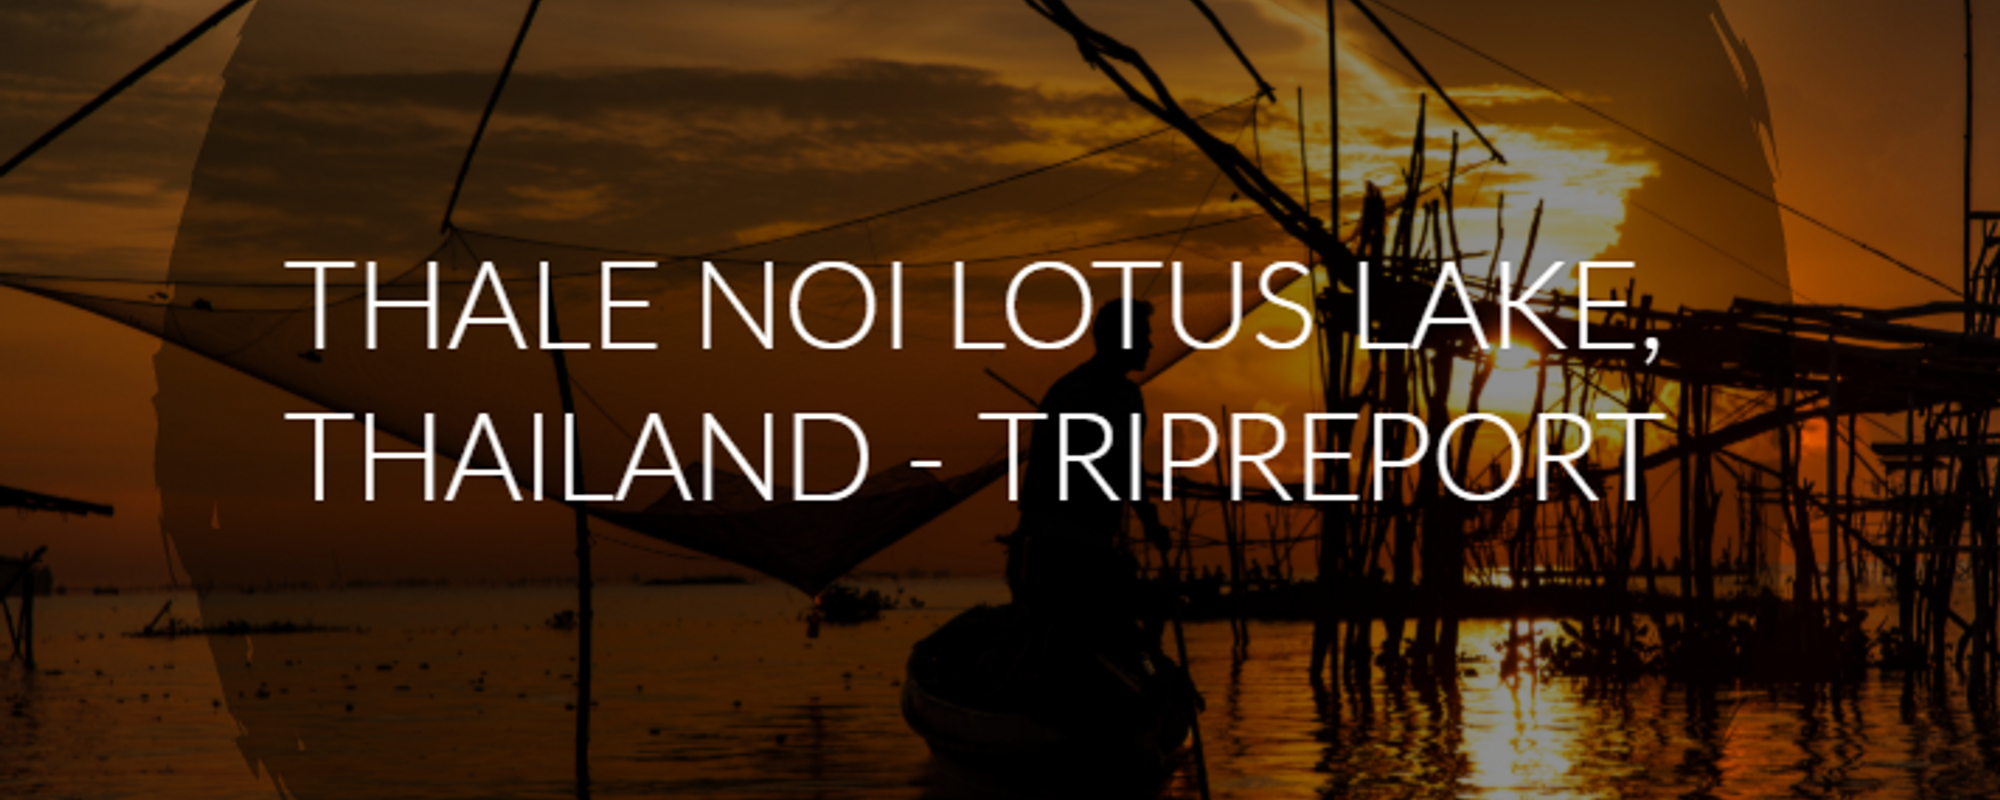 Thale Noi Lotus Lake, Thailand - Tripreport